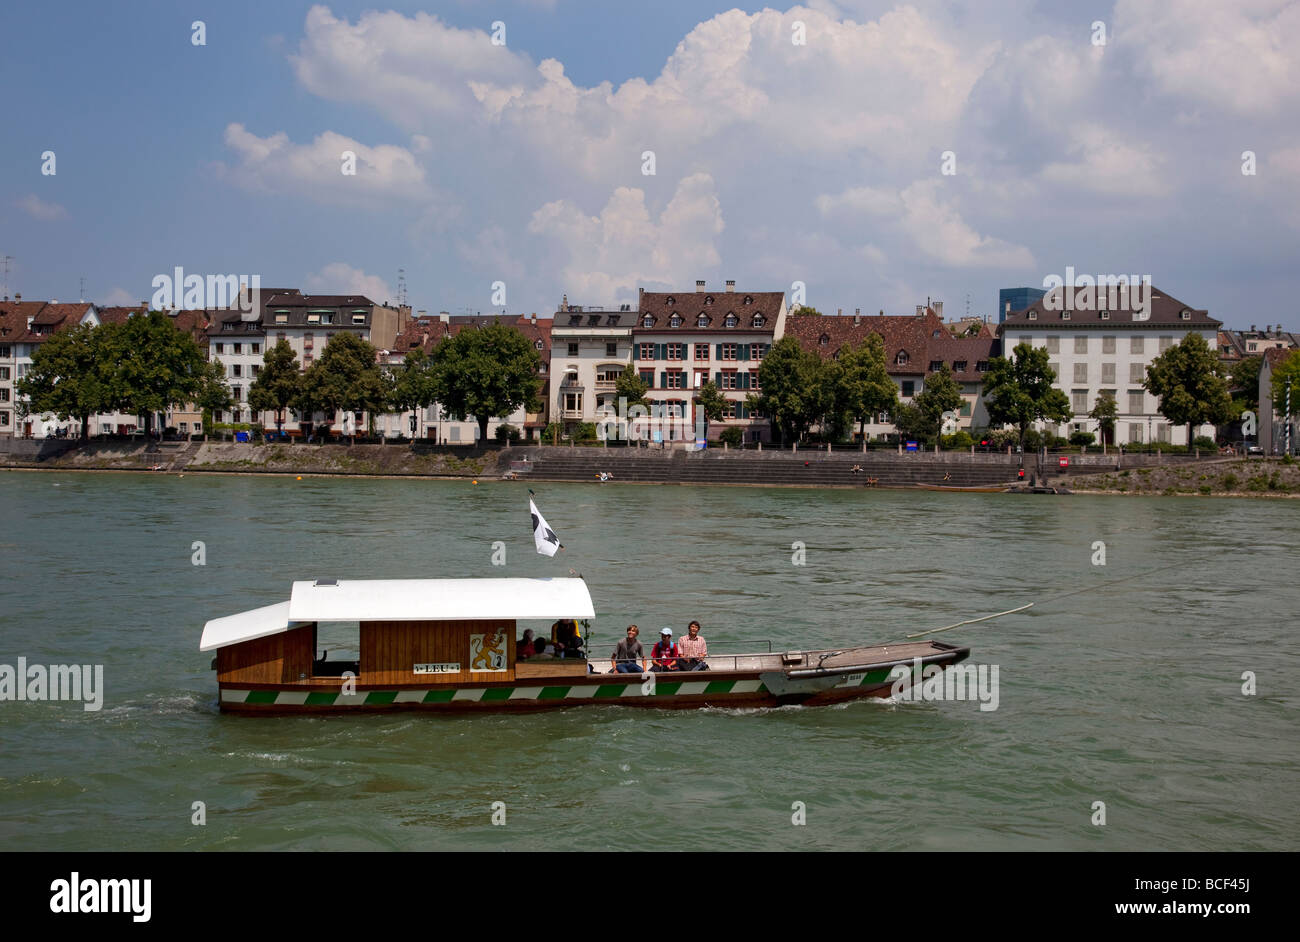 River and Rhine ferry passenger boat, rheinpromenade, Basel, Switzerland, Europe. Stock Photo